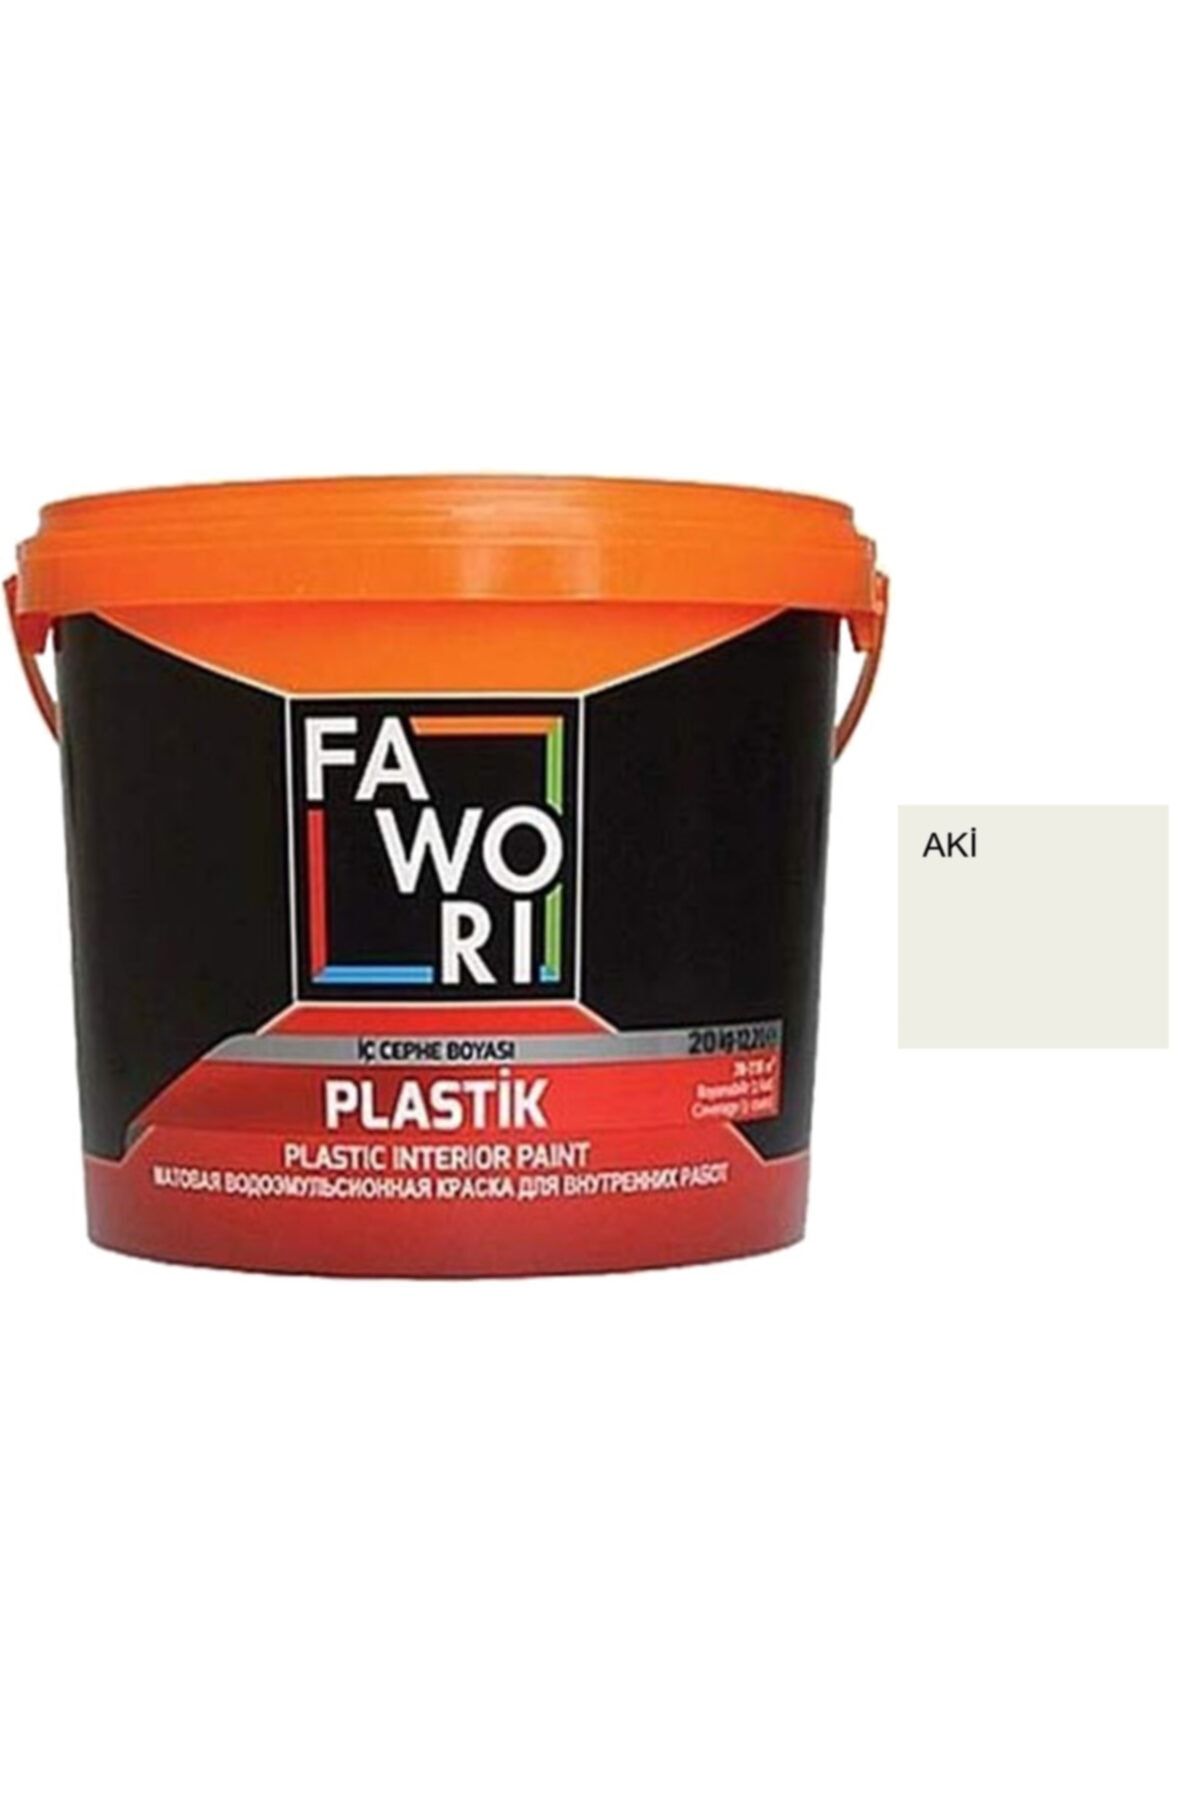 Fawori Plastik Iç Cephe Boyası 3.5 Kg ( Aki )